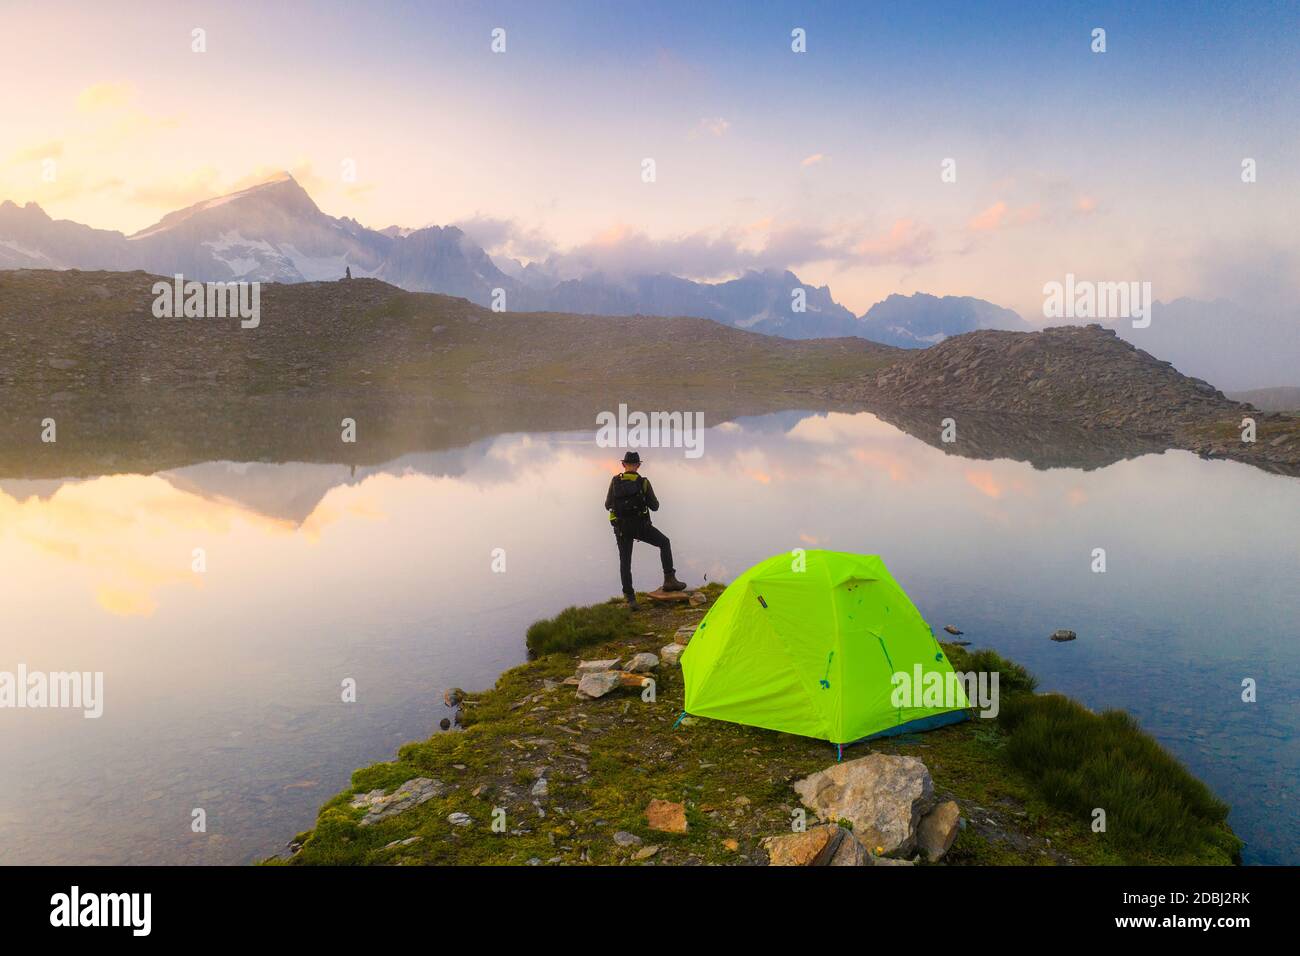 Vue arrière de l'homme avec chapeau debout à l'extérieur de la tente au lac Obere Schwarziseeli à l'aube, col de Furka, canton d'Uri, Suisse, Europe Banque D'Images